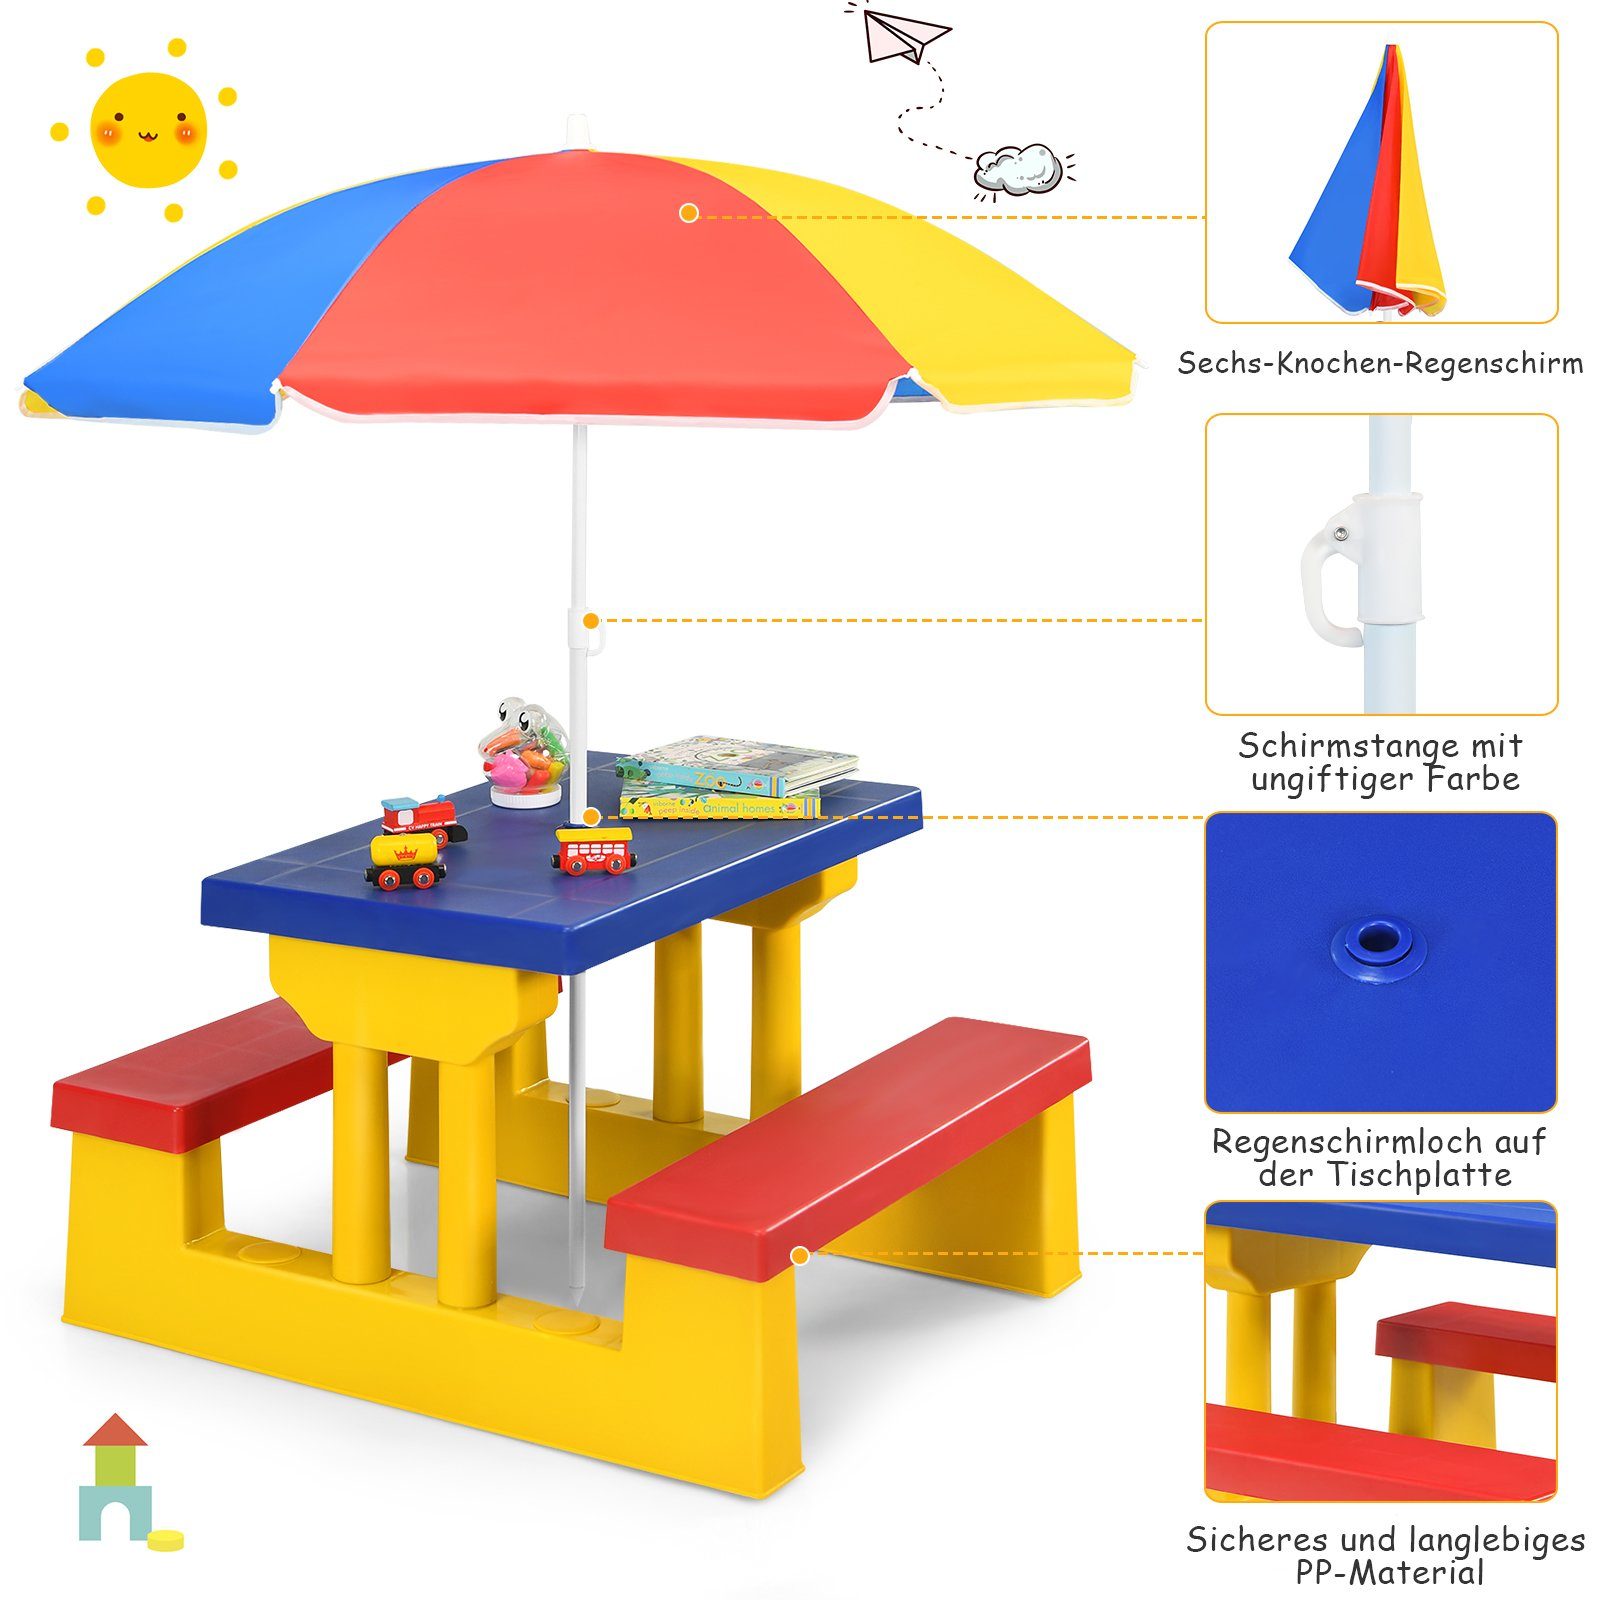 Rot+Blau+Gelb Sitzgarnitur, Kindertisch, Sonnenschirm mit COSTWAY Kindersitzgruppe